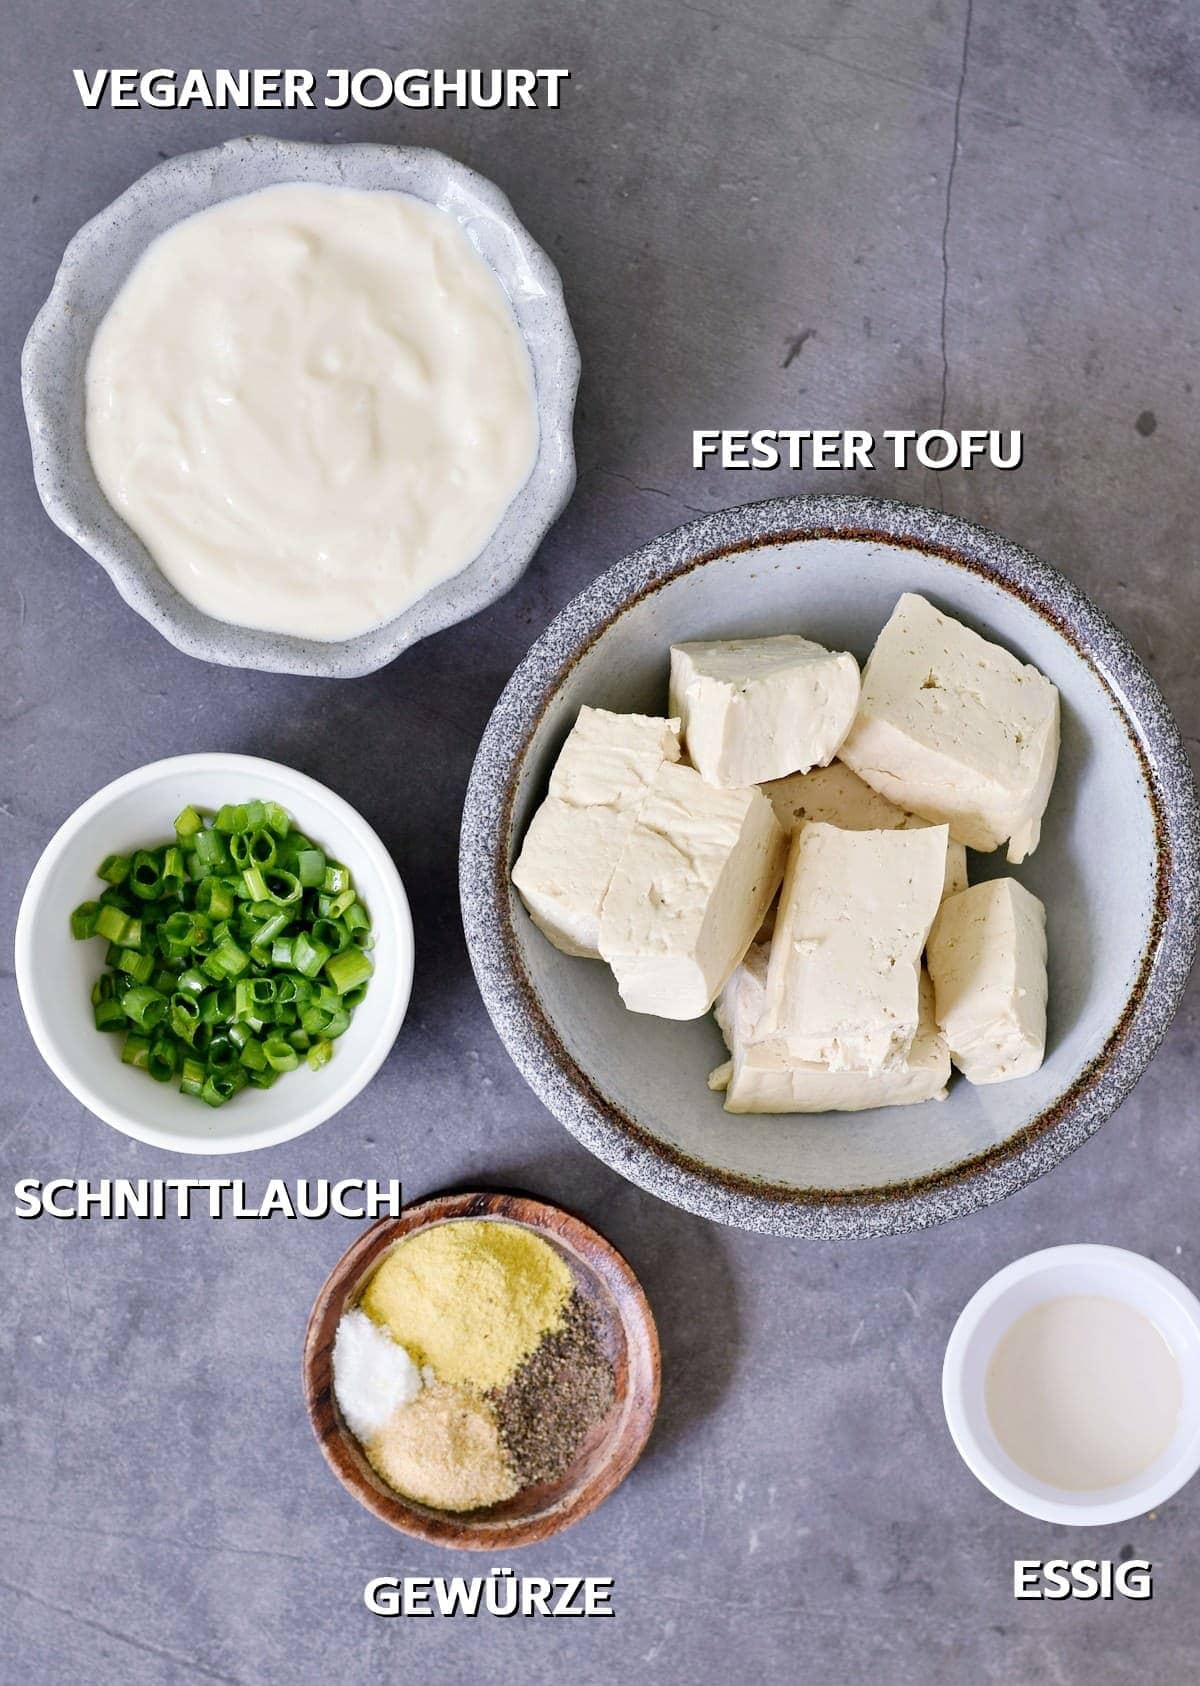 veganer joghurt, fester tofu, schnittlauch, gewürze, essig